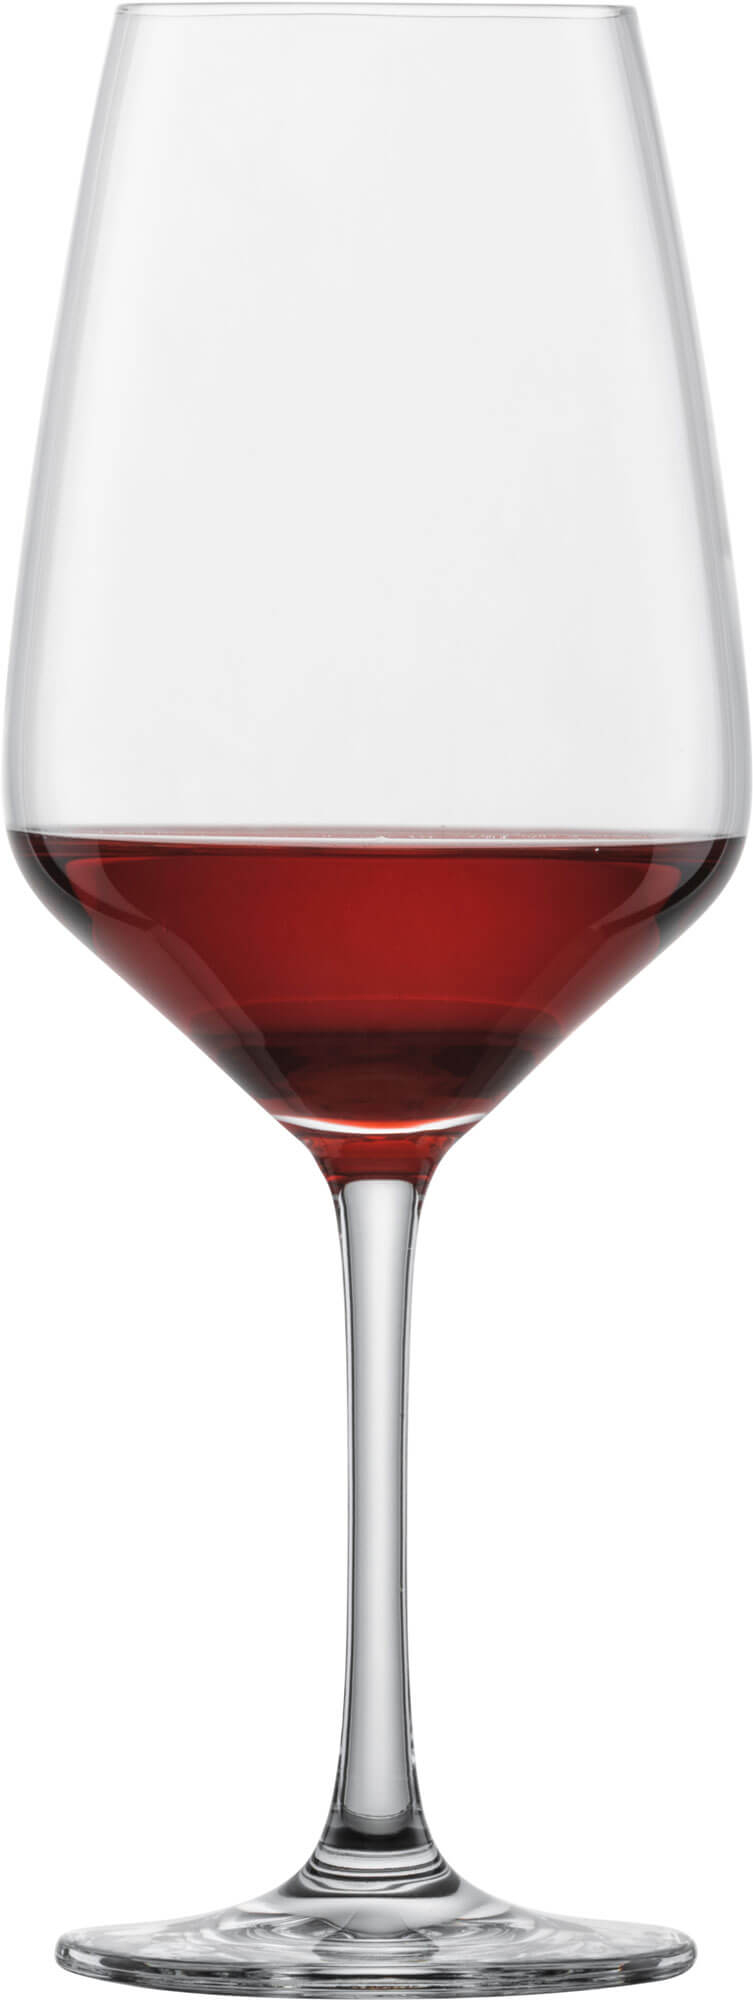 Rotweinglas Taste, Schott Zwiesel - 497ml (6 Stk.)